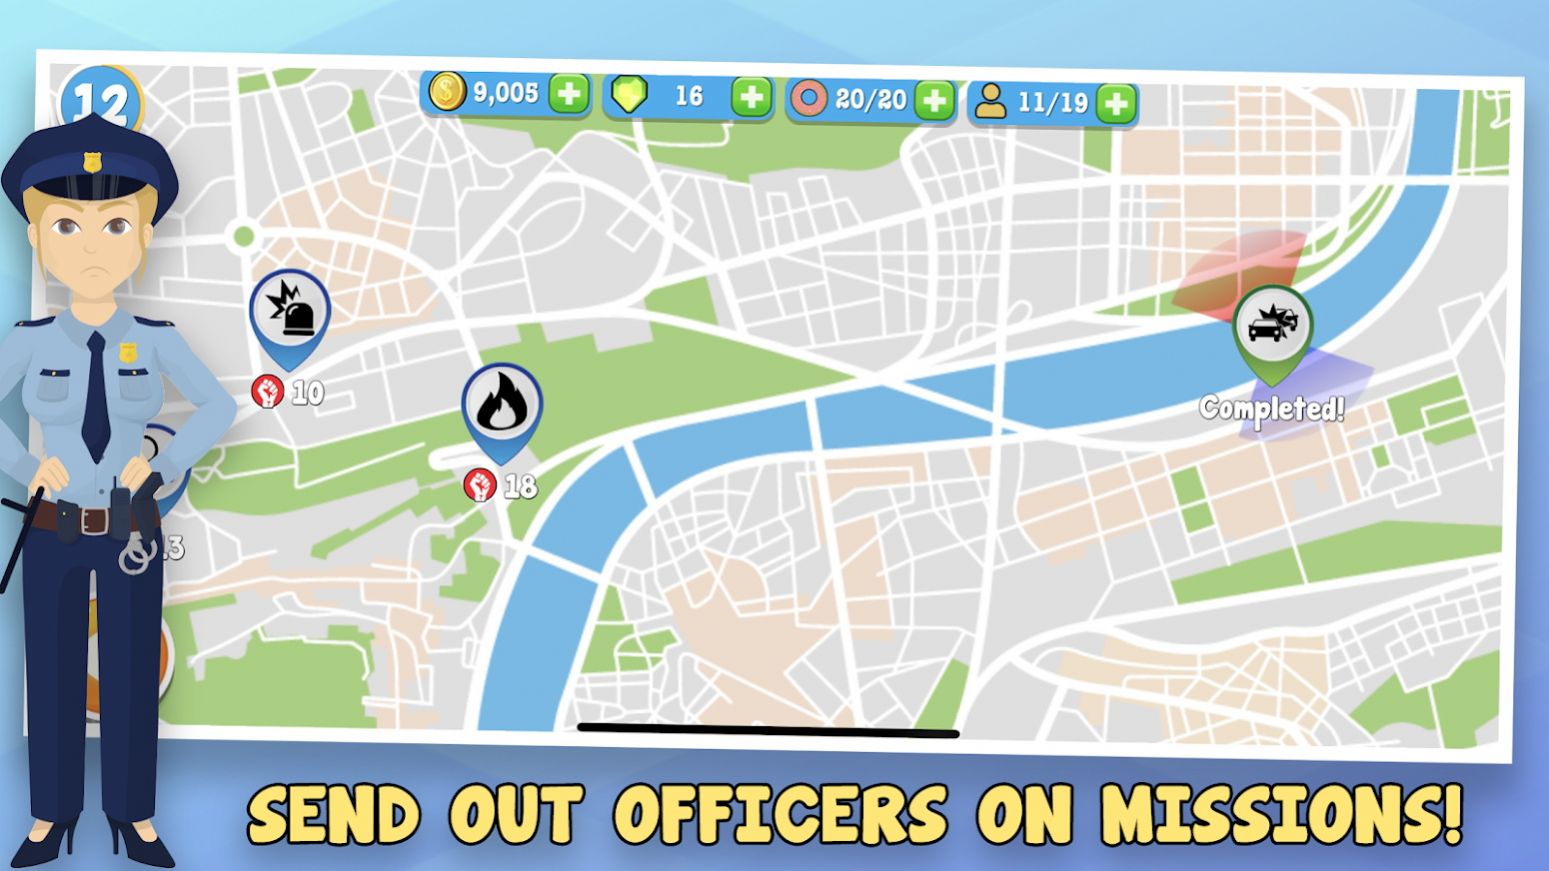 警察公司模拟器游戏安卓版 v1.0.23